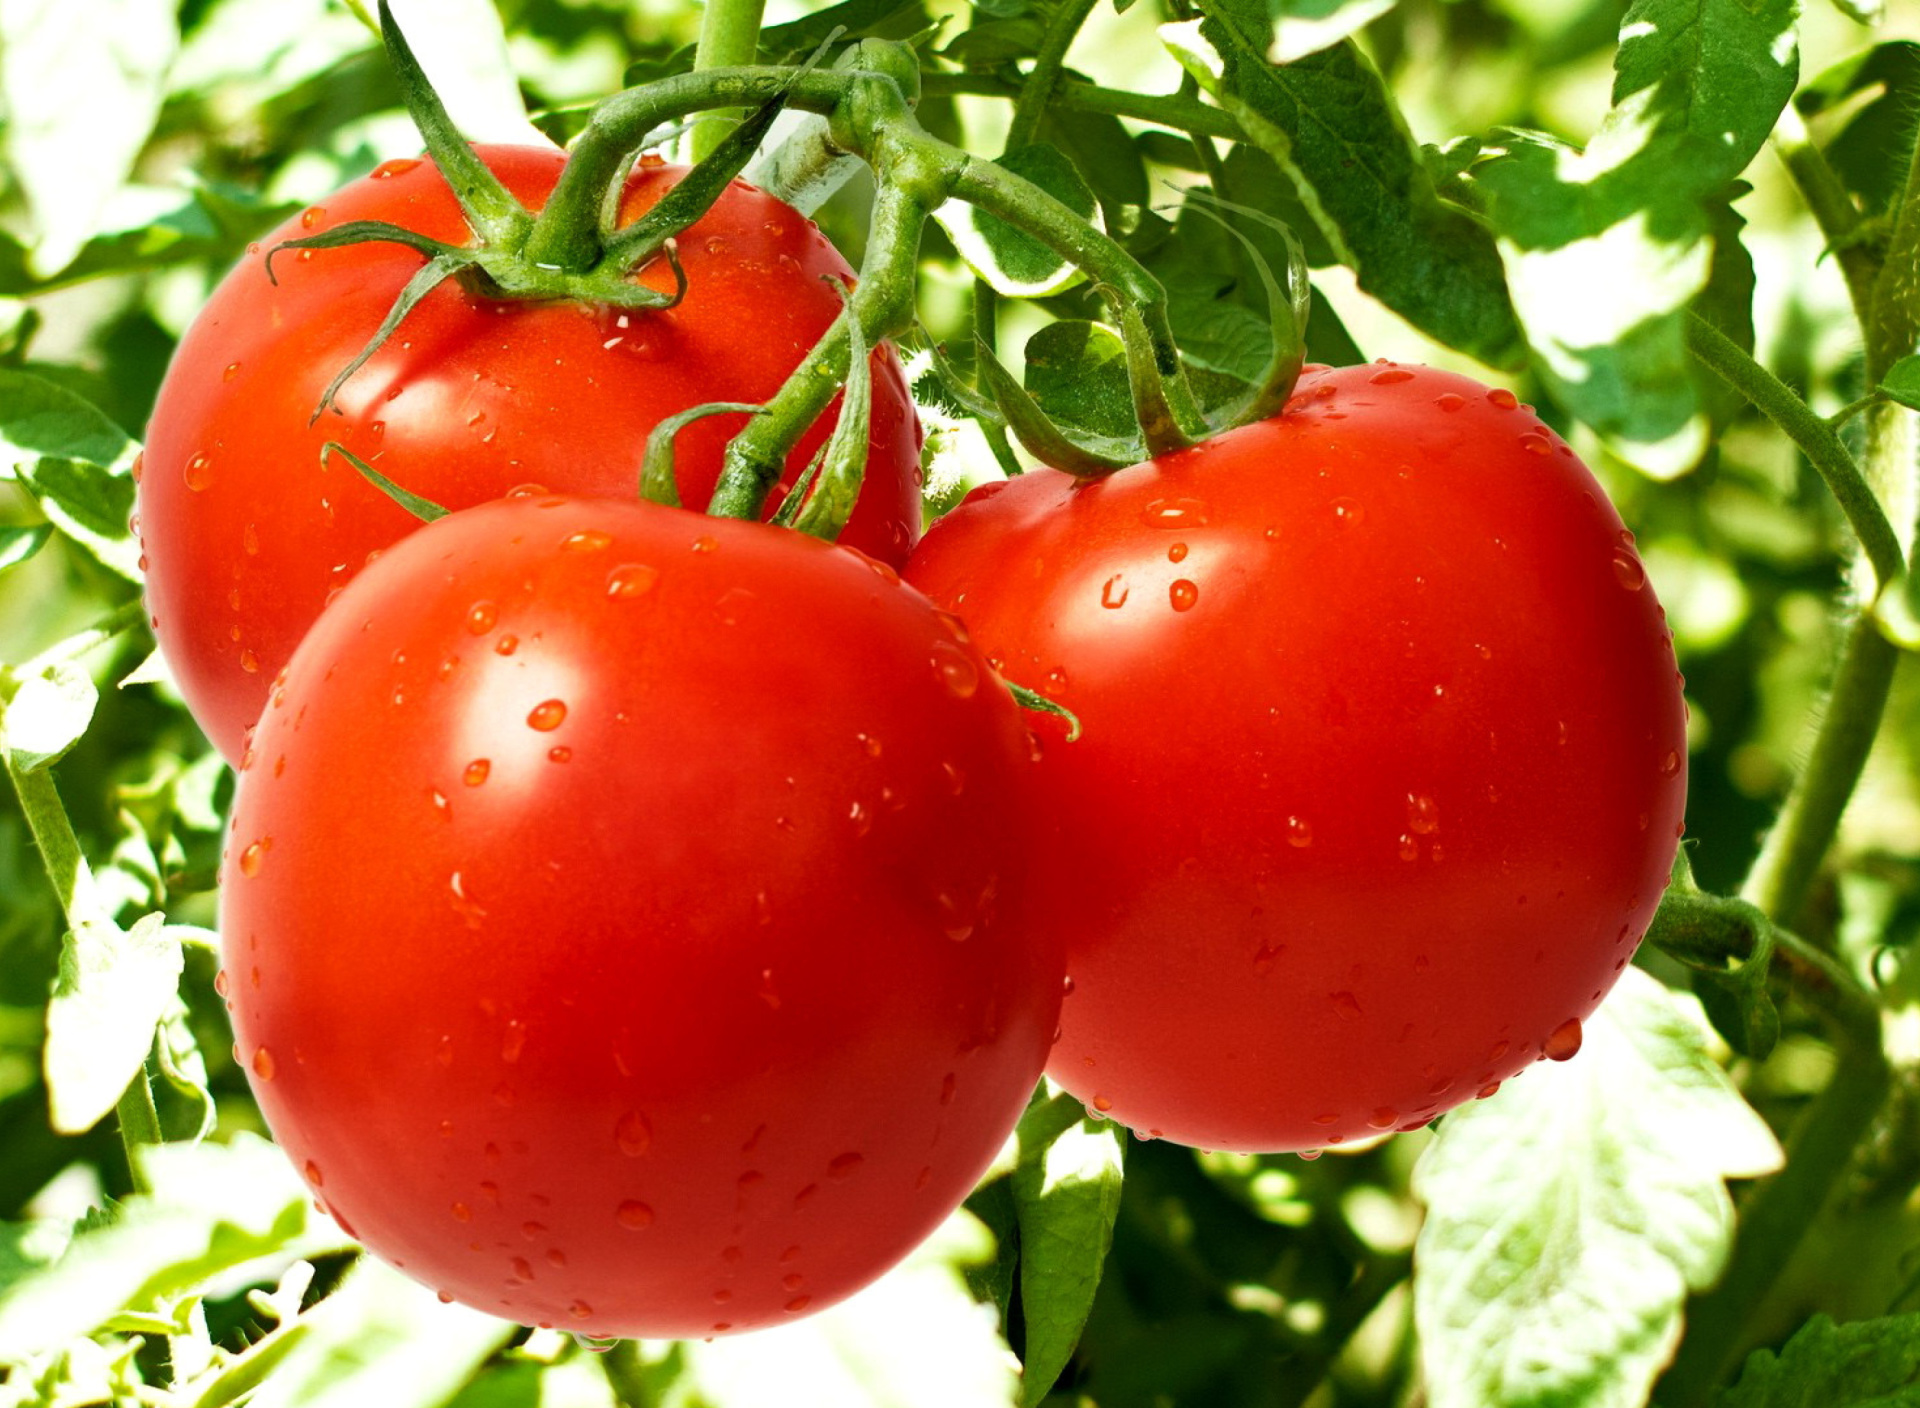 Sfondi Tomatoes on Bush 1920x1408